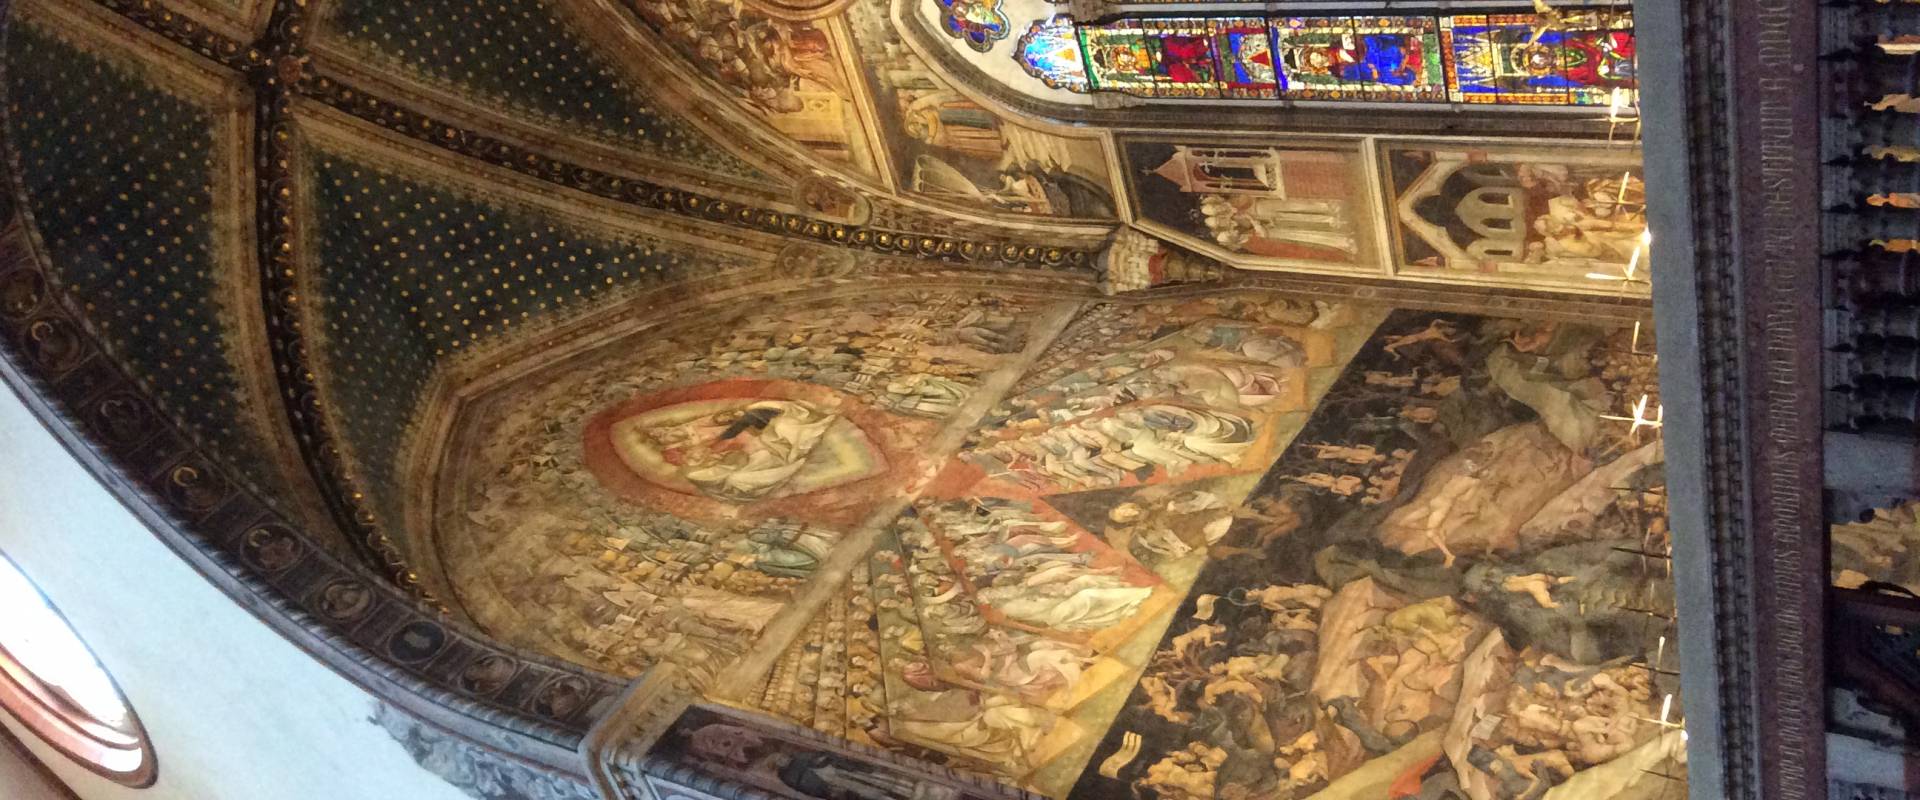 Cappella Bolognini, “Il giudizio universale”, Giovanni da Modena photo by Paolapla